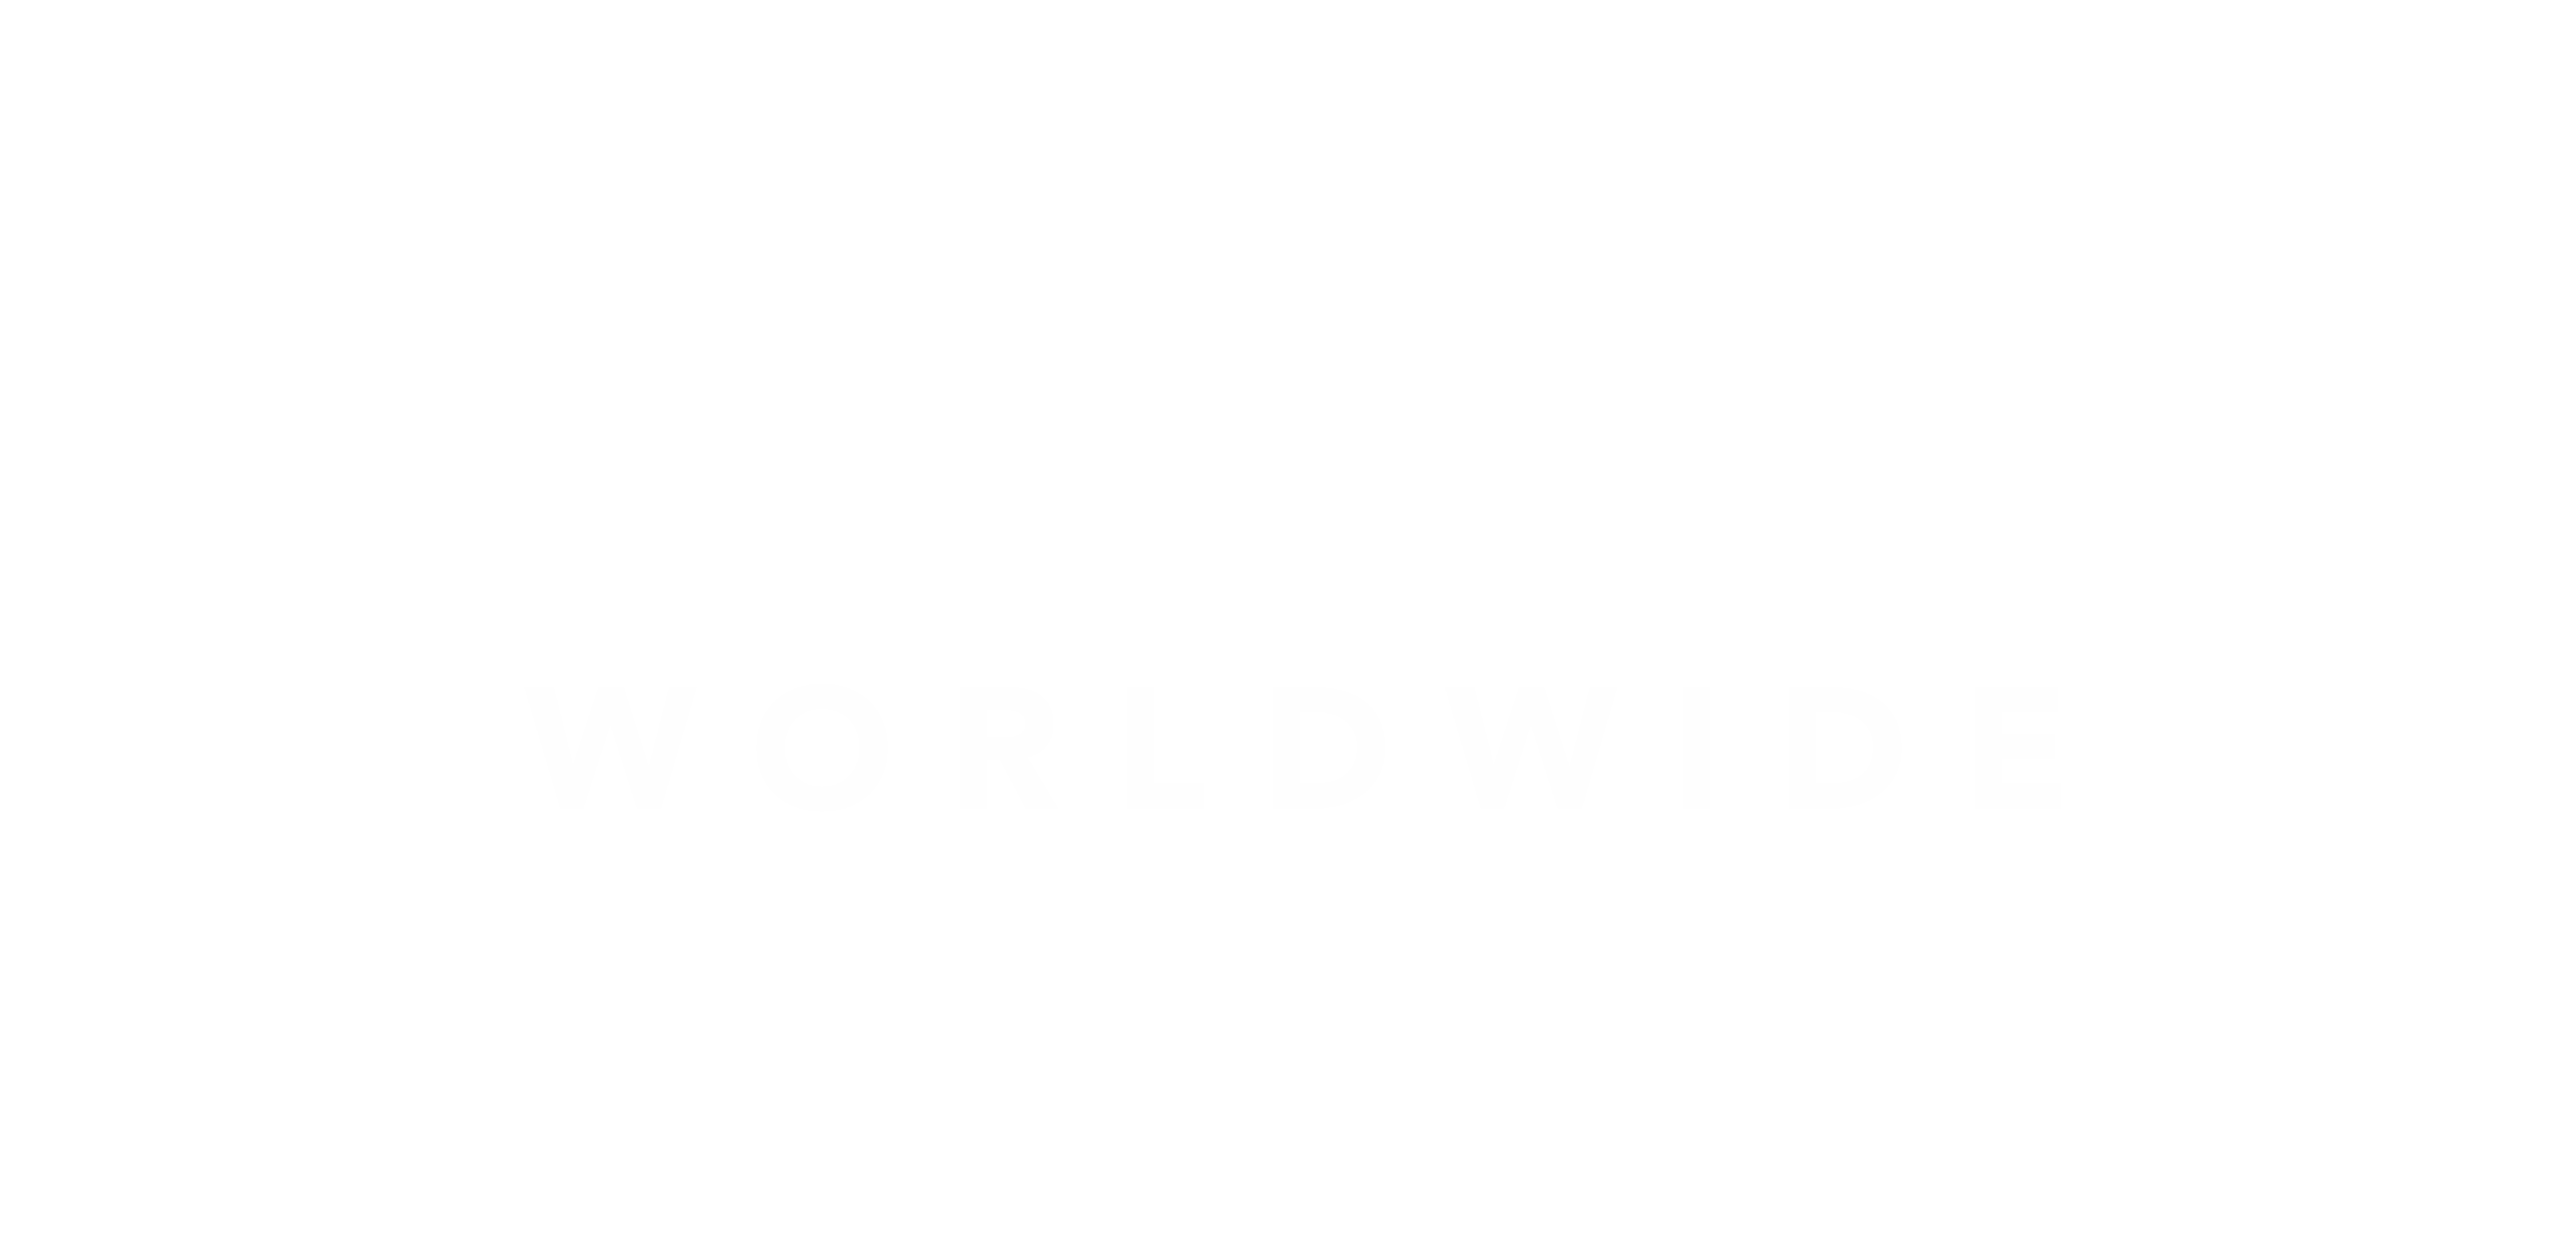 Paradise Worldwide Logo